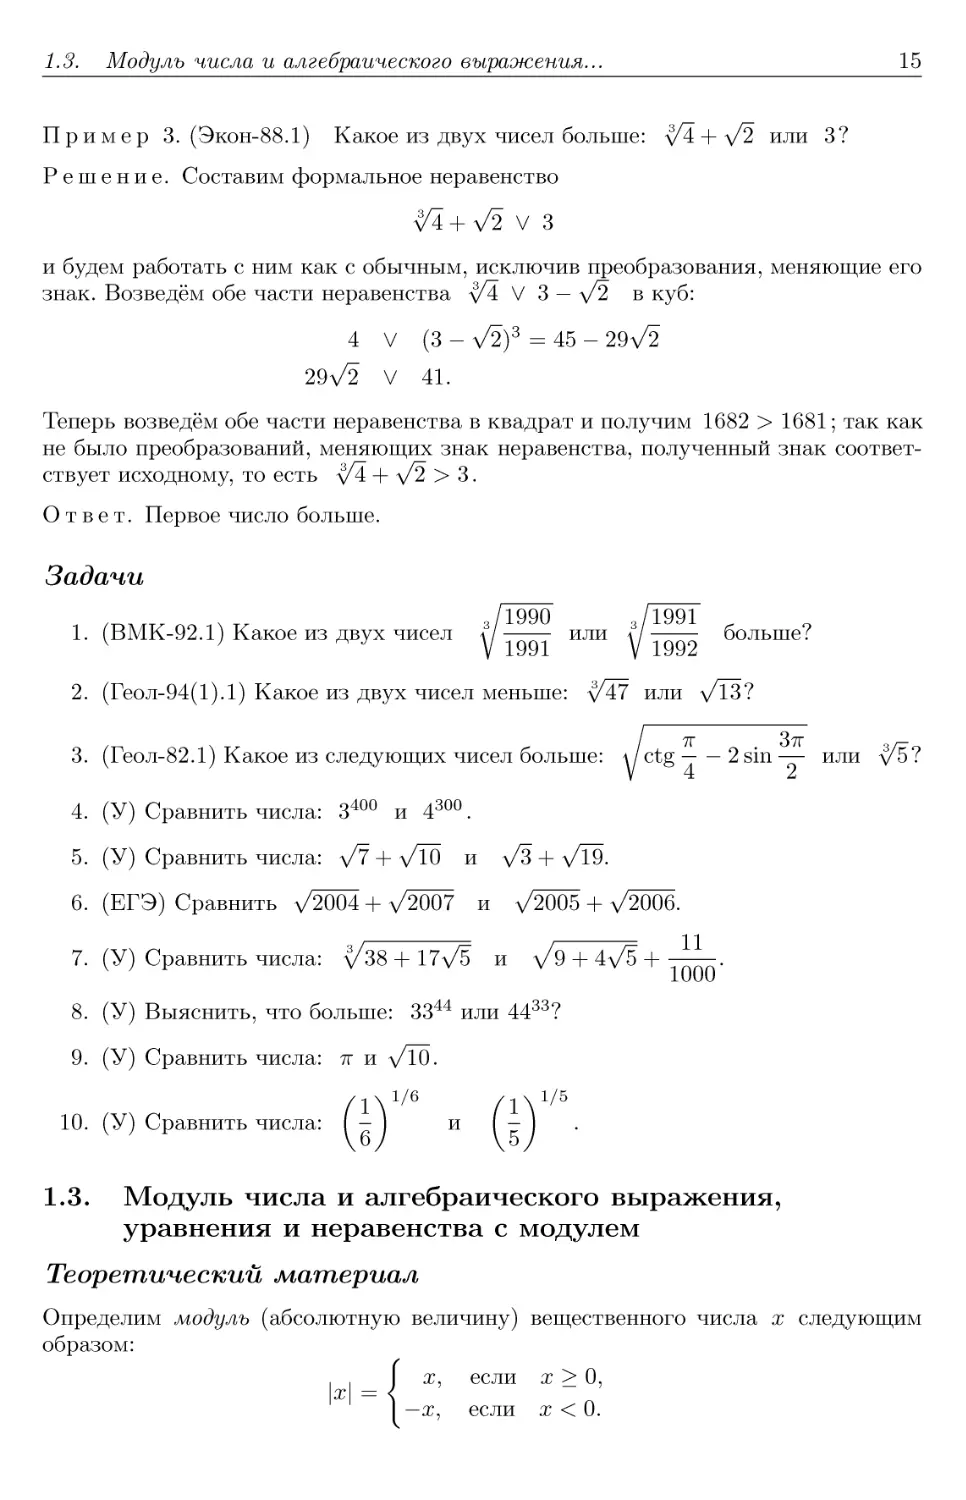 1.3. Модуль числа и алгебраического выражения, уравнения и неравенства с модулем